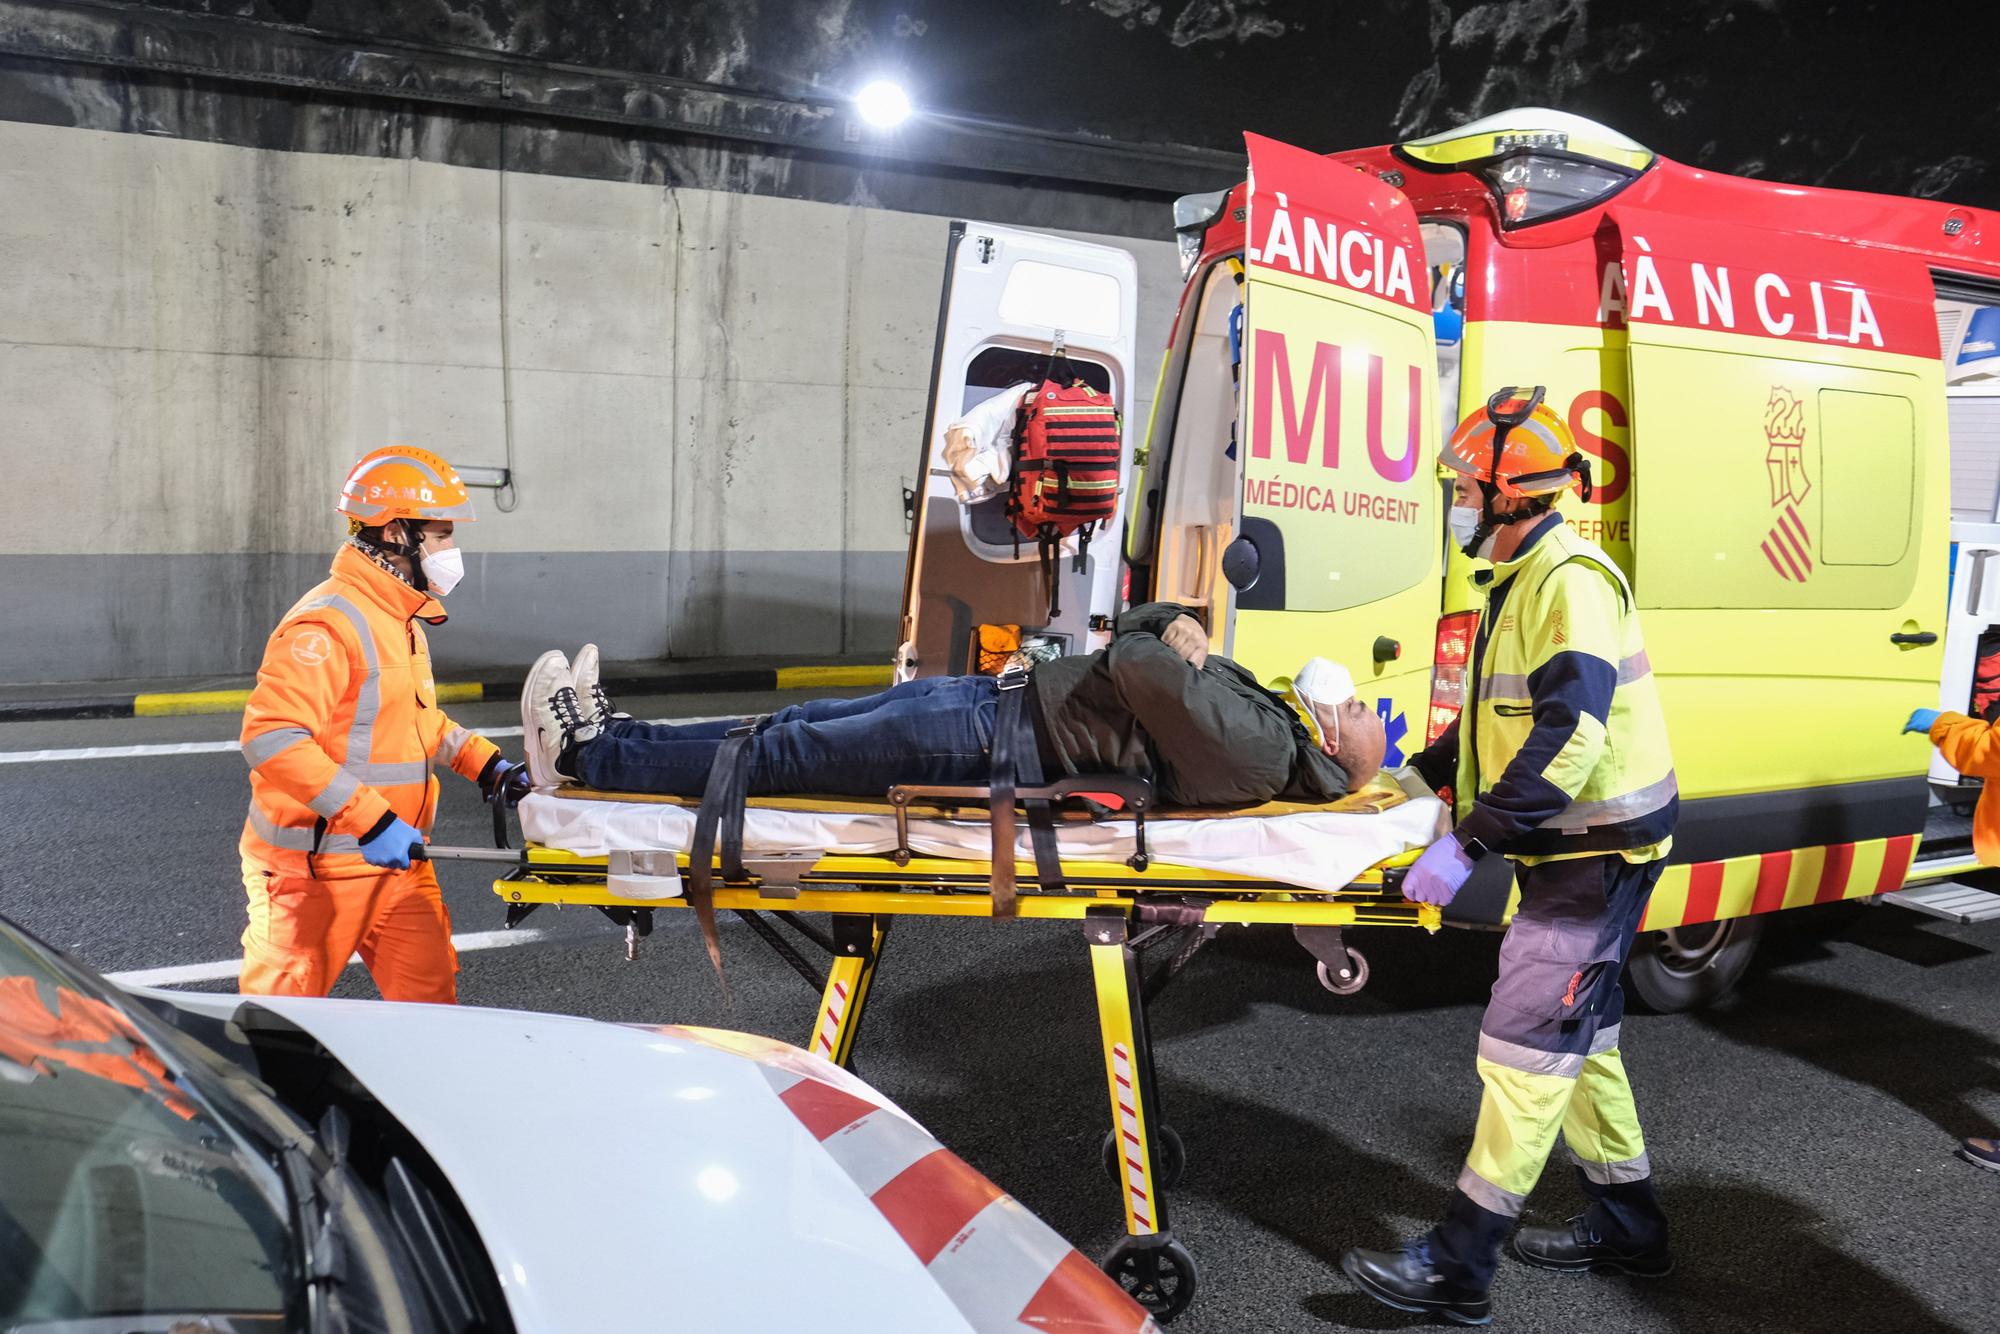 Accidente con incendio y dos heridos graves en el túnel de Villena: así ha sido el simulacro en la autovía A-31